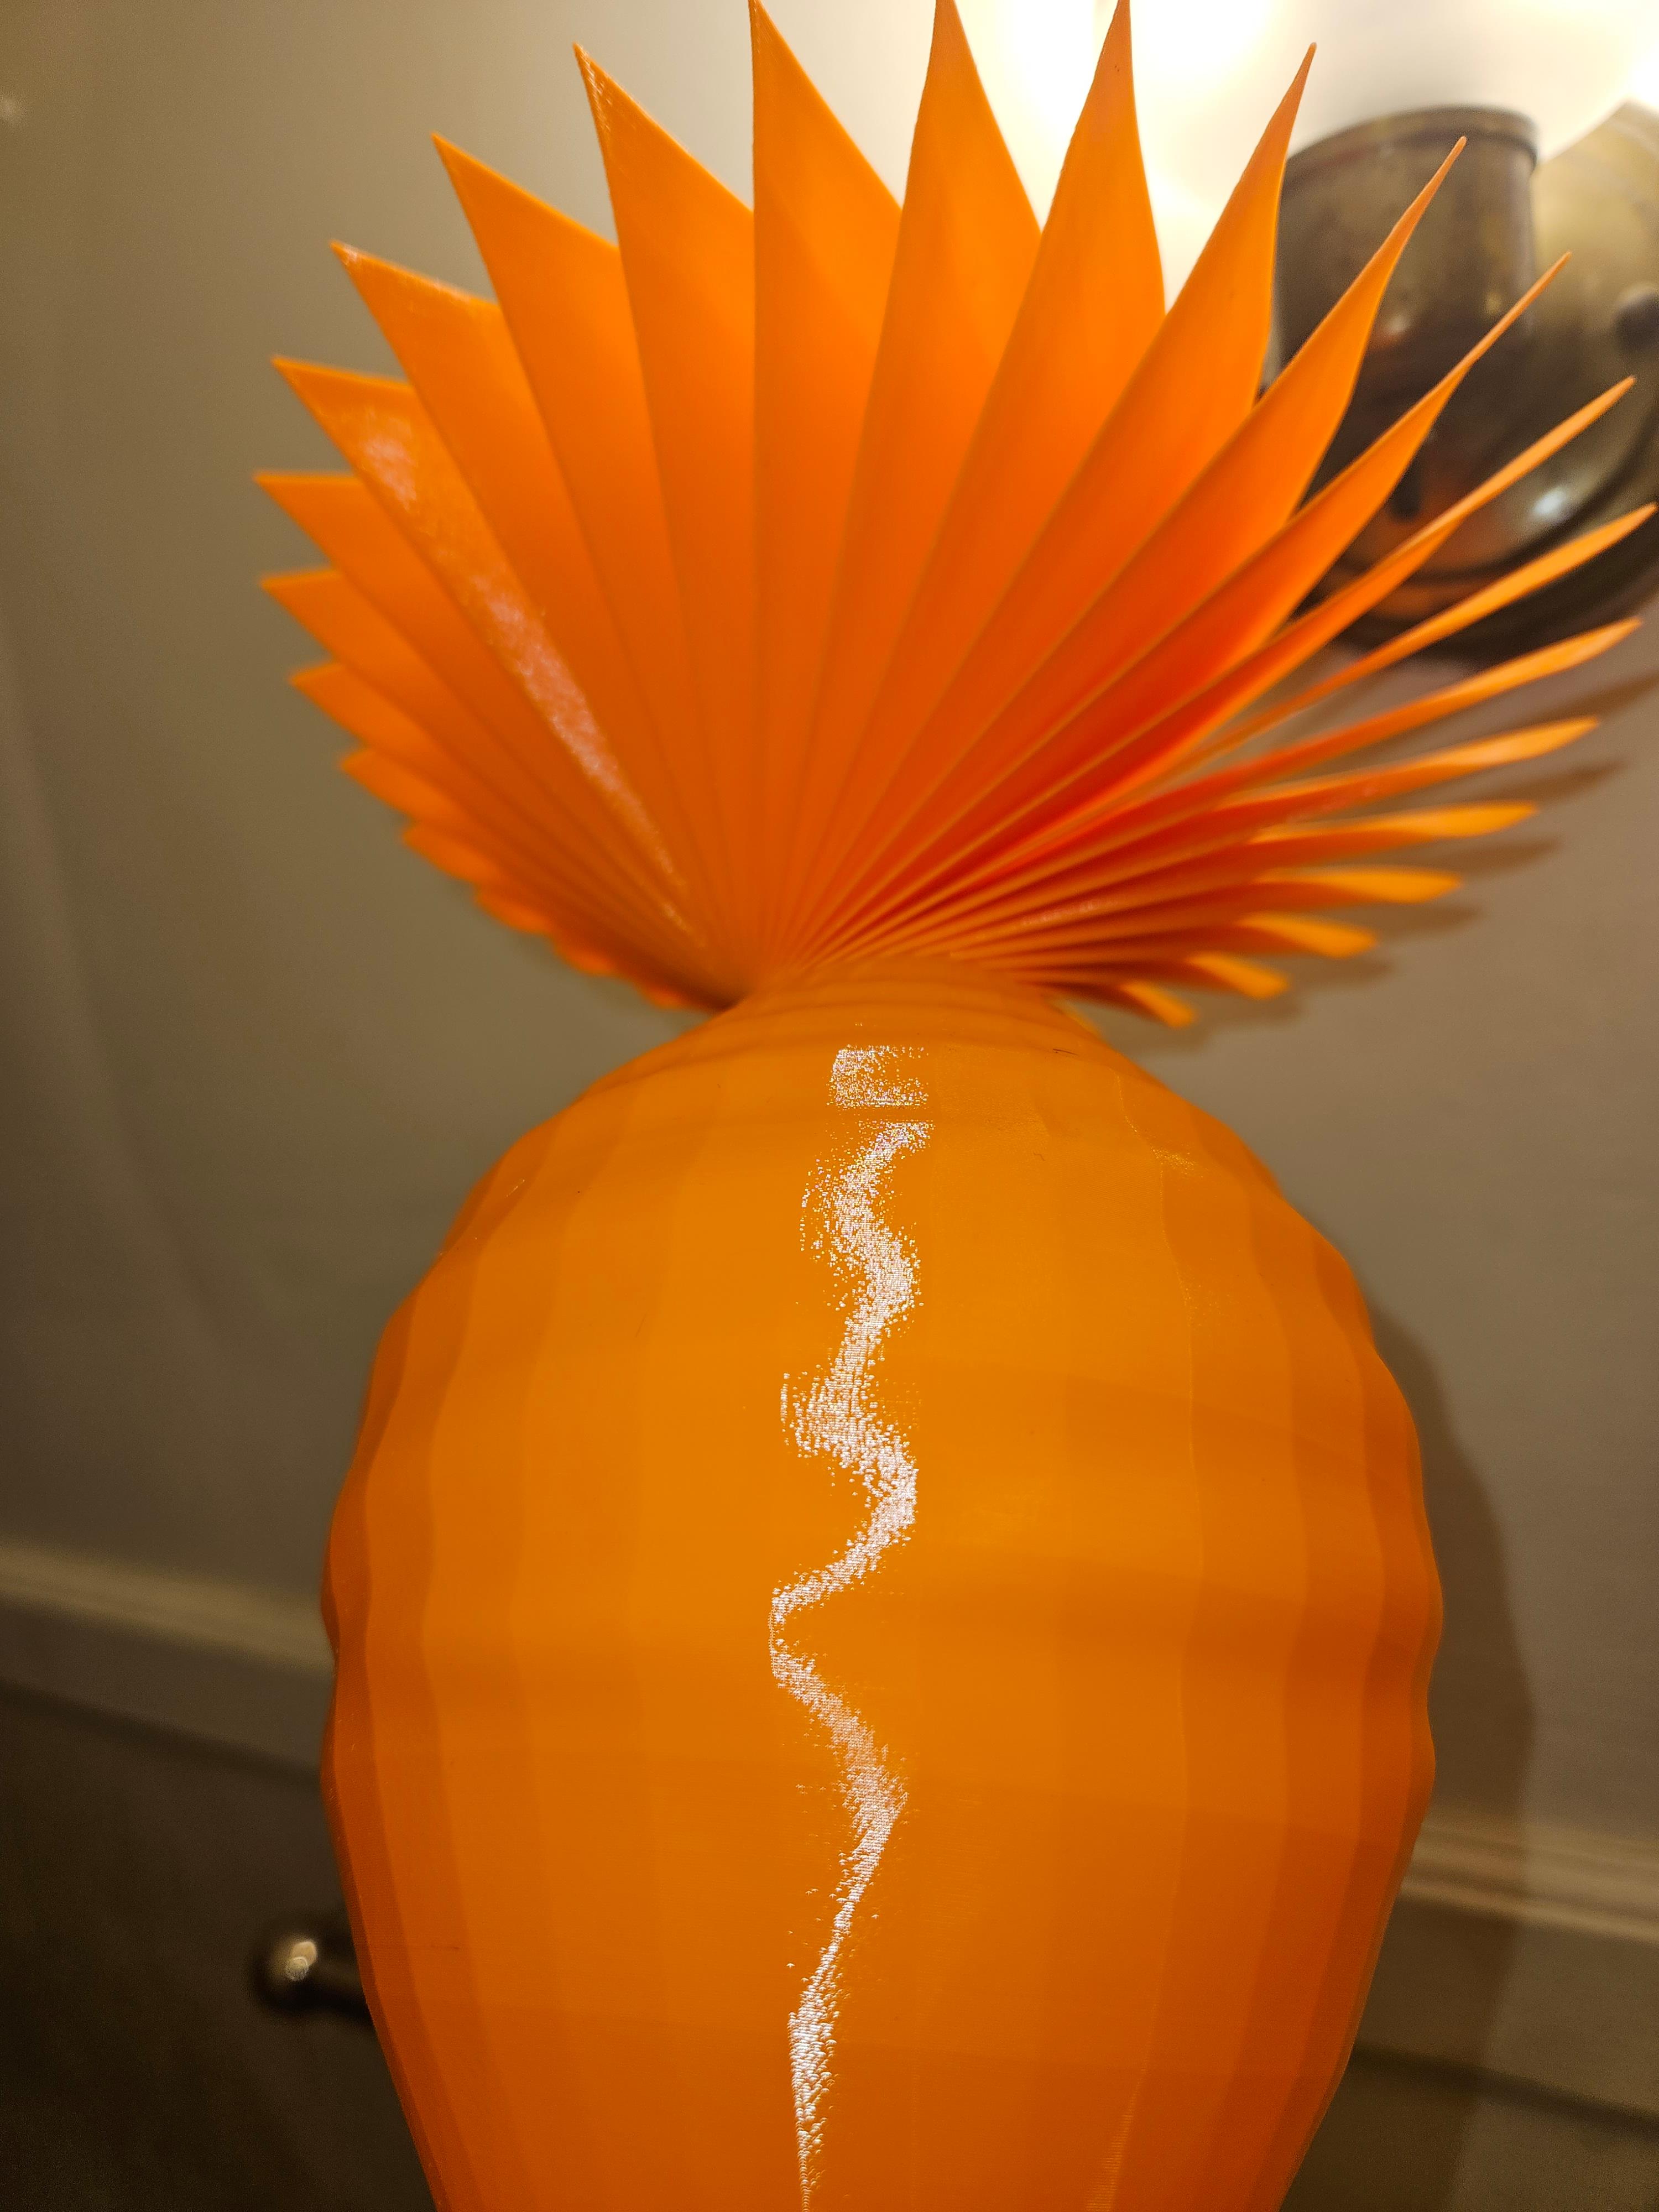 Petal vase challenge  - Printed on ender 3 pro using SMuFF v6 - 3d model